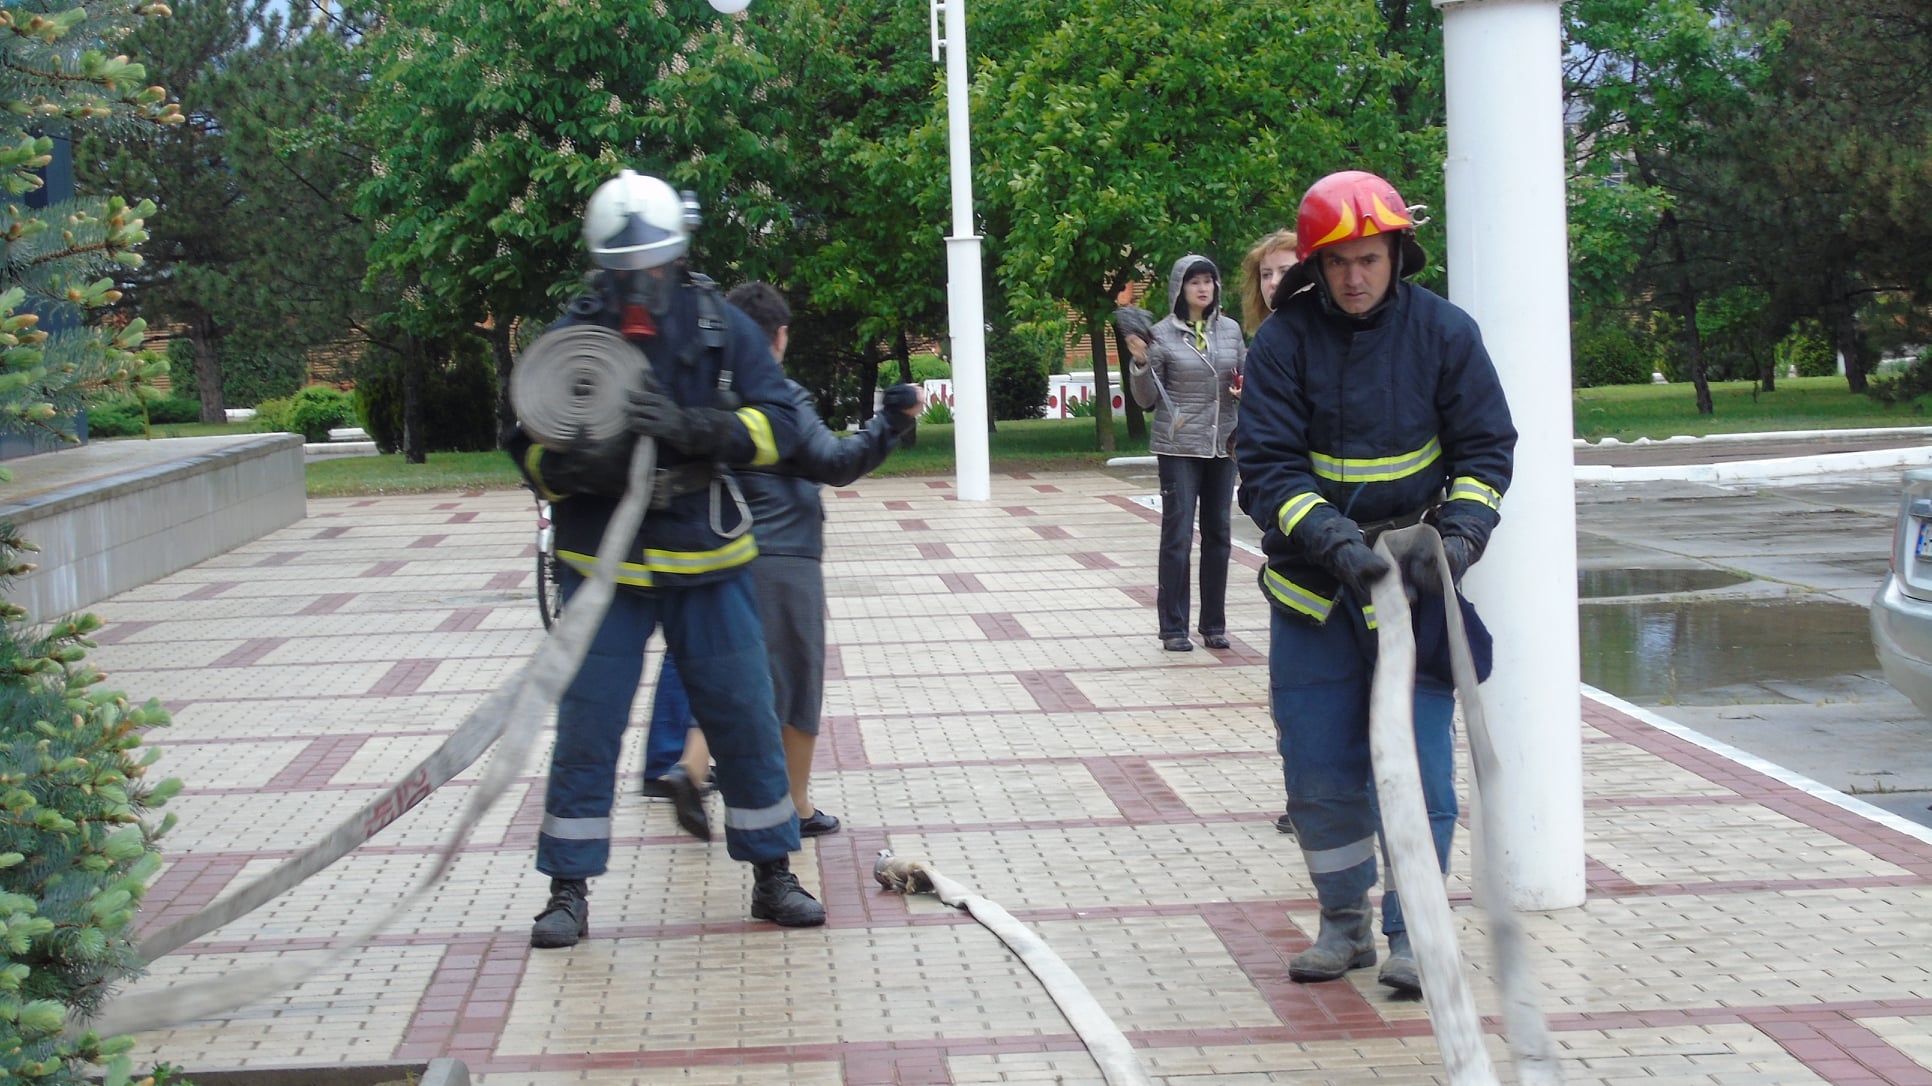 Пожар ликвидировали, сотрудники эвакуировали: в Администрации Измаильского морского порта прошла тренировка